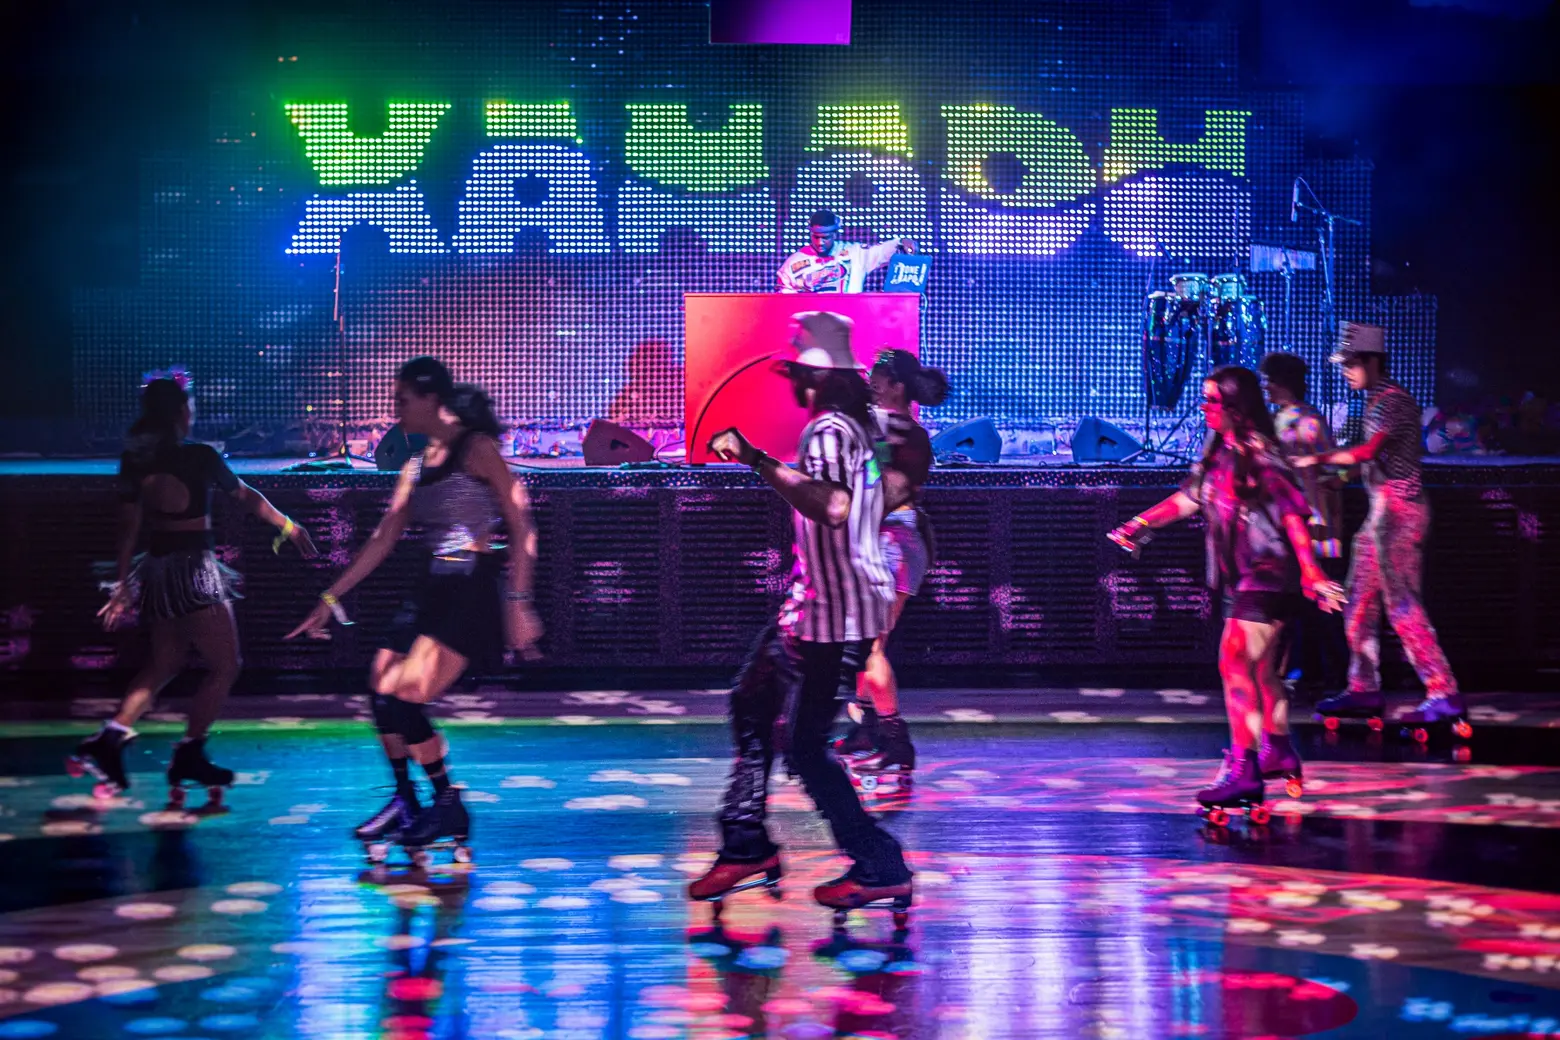 Xanadu, a funky roller disco and nightclub, lands in Bushwick